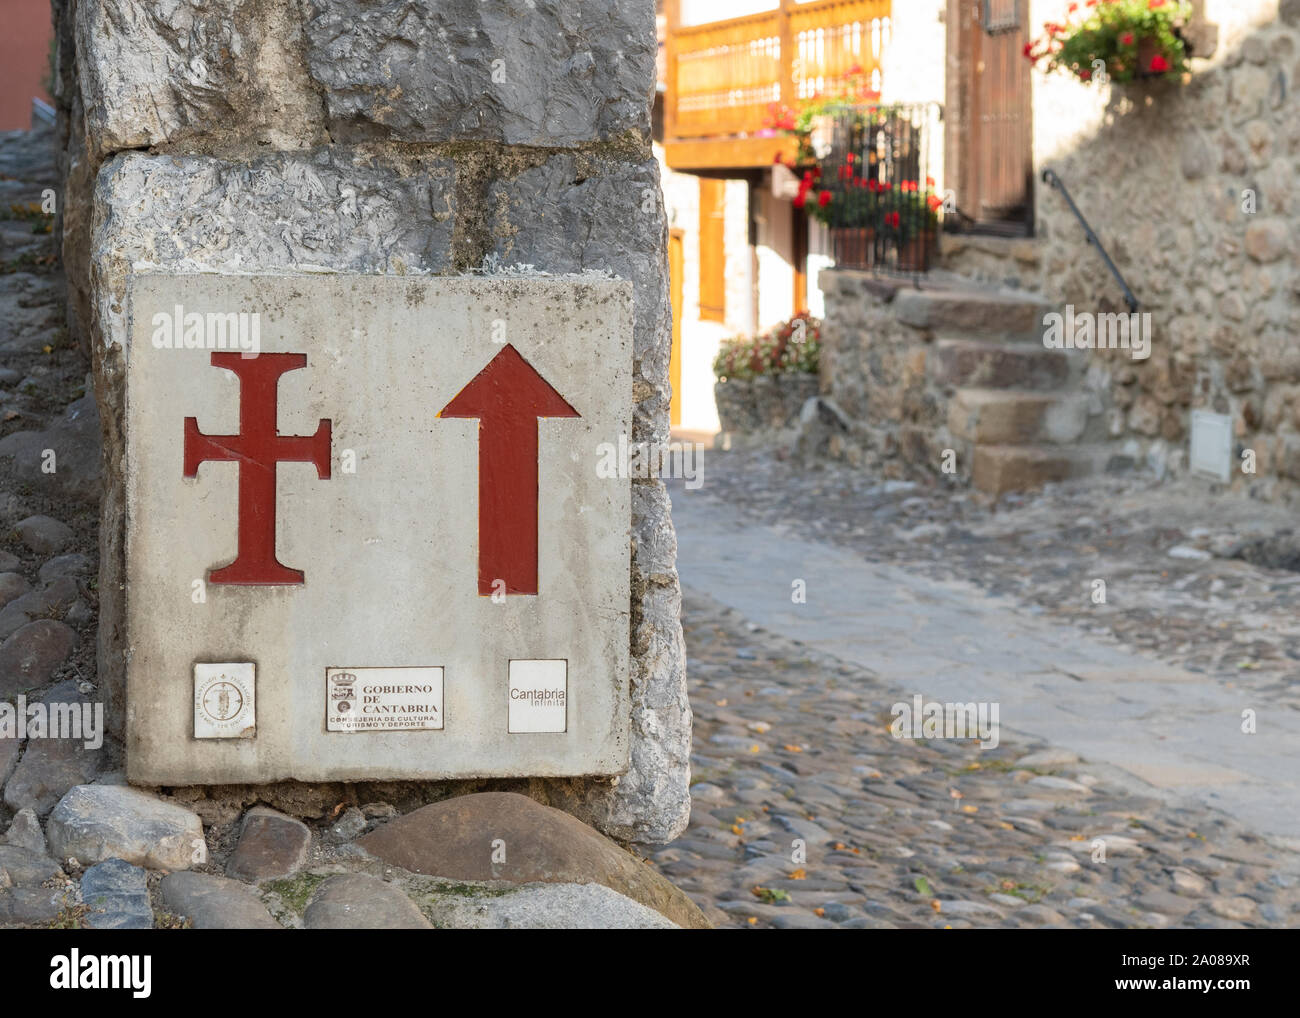 Camino Leganiego ou waymarker signe à Potes, Cantabria, ESPAGNE Banque D'Images